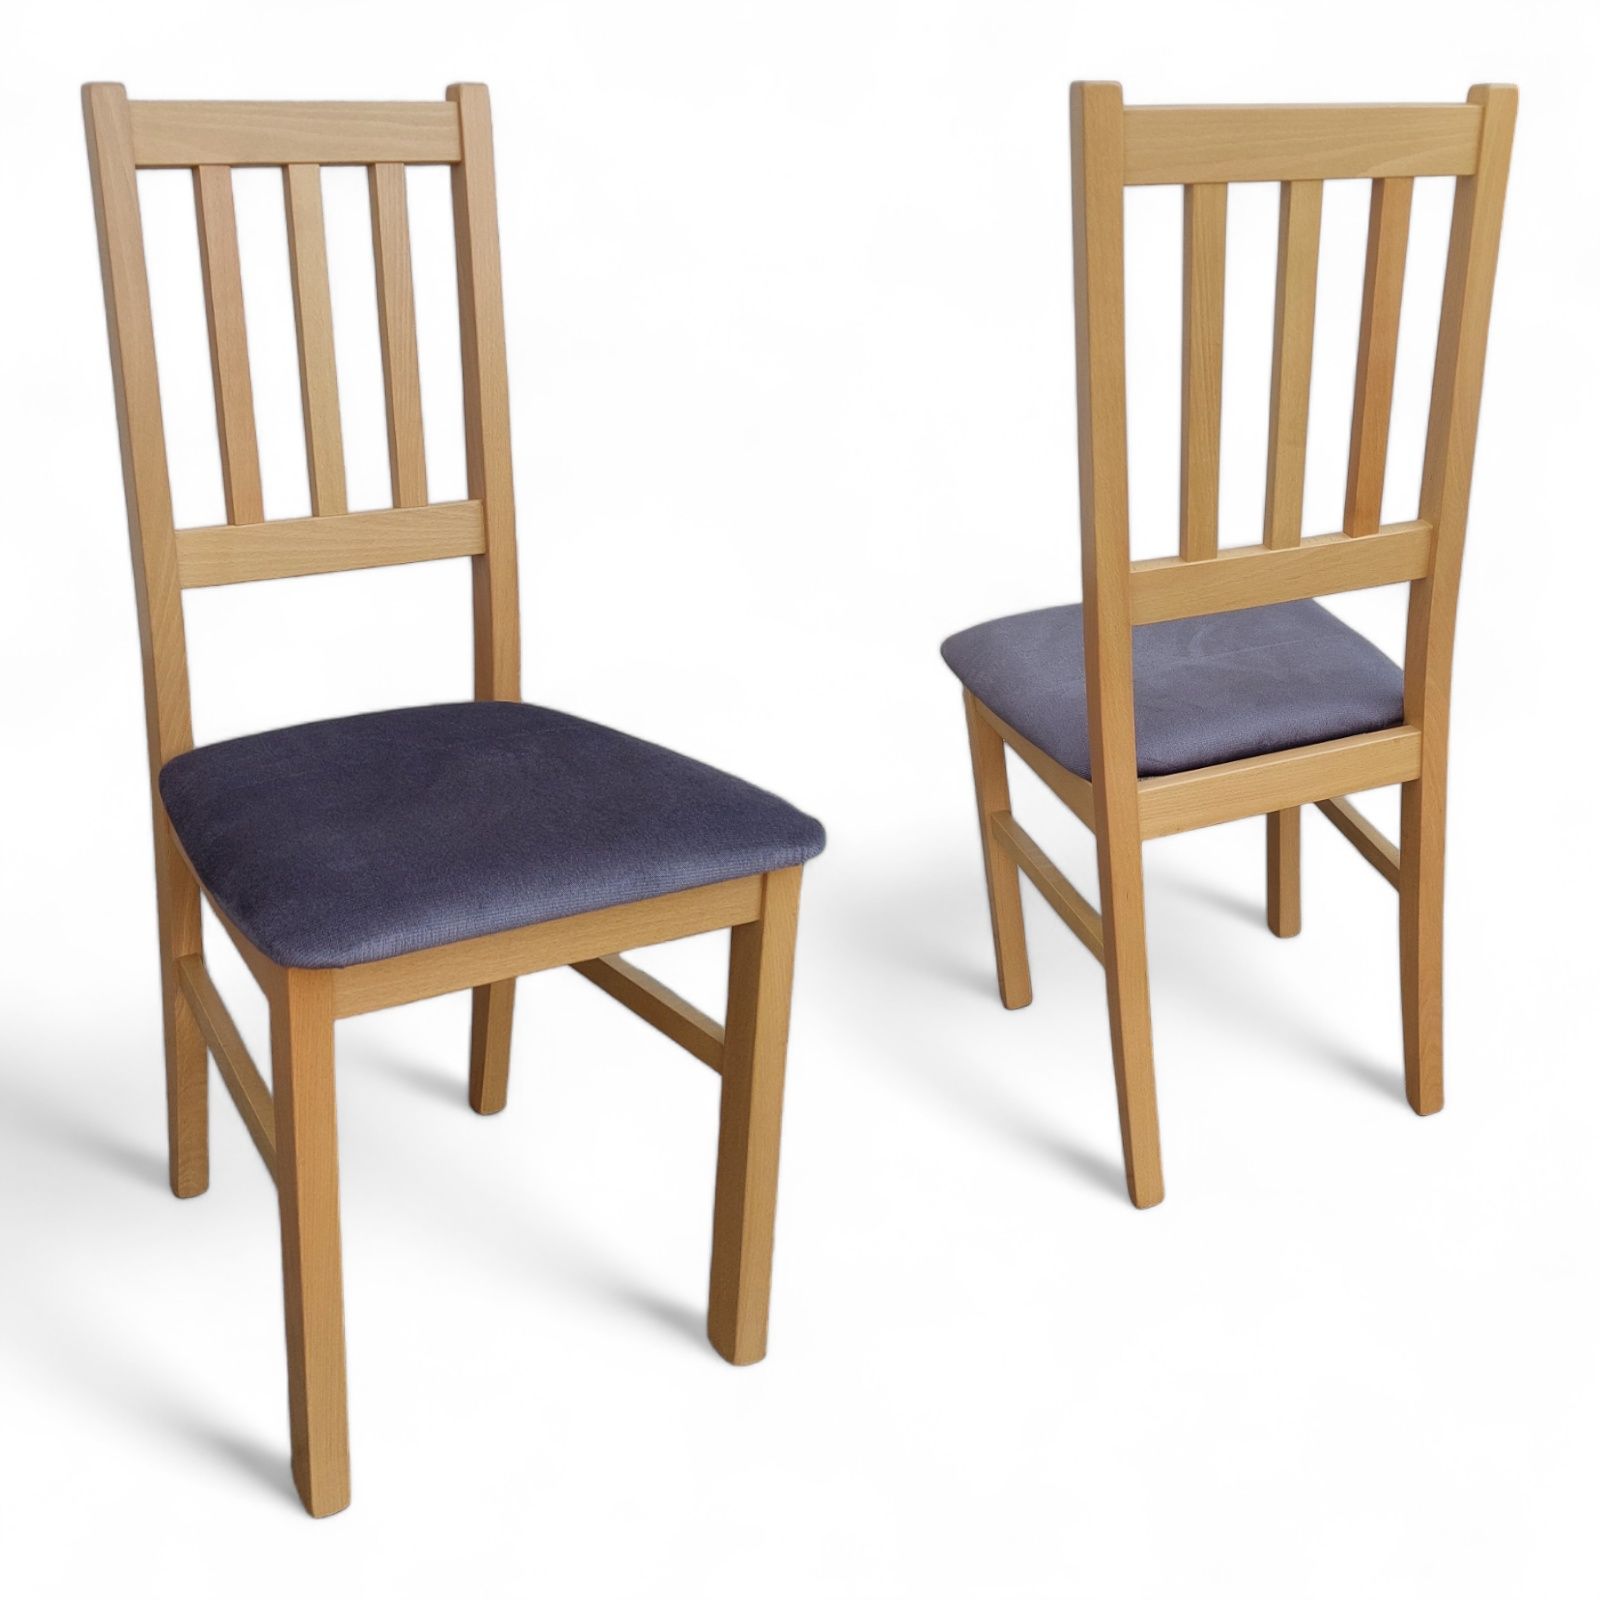 Nowy Stół 120/150/80 + 4 krzesła z drewna bukowego różne kolory